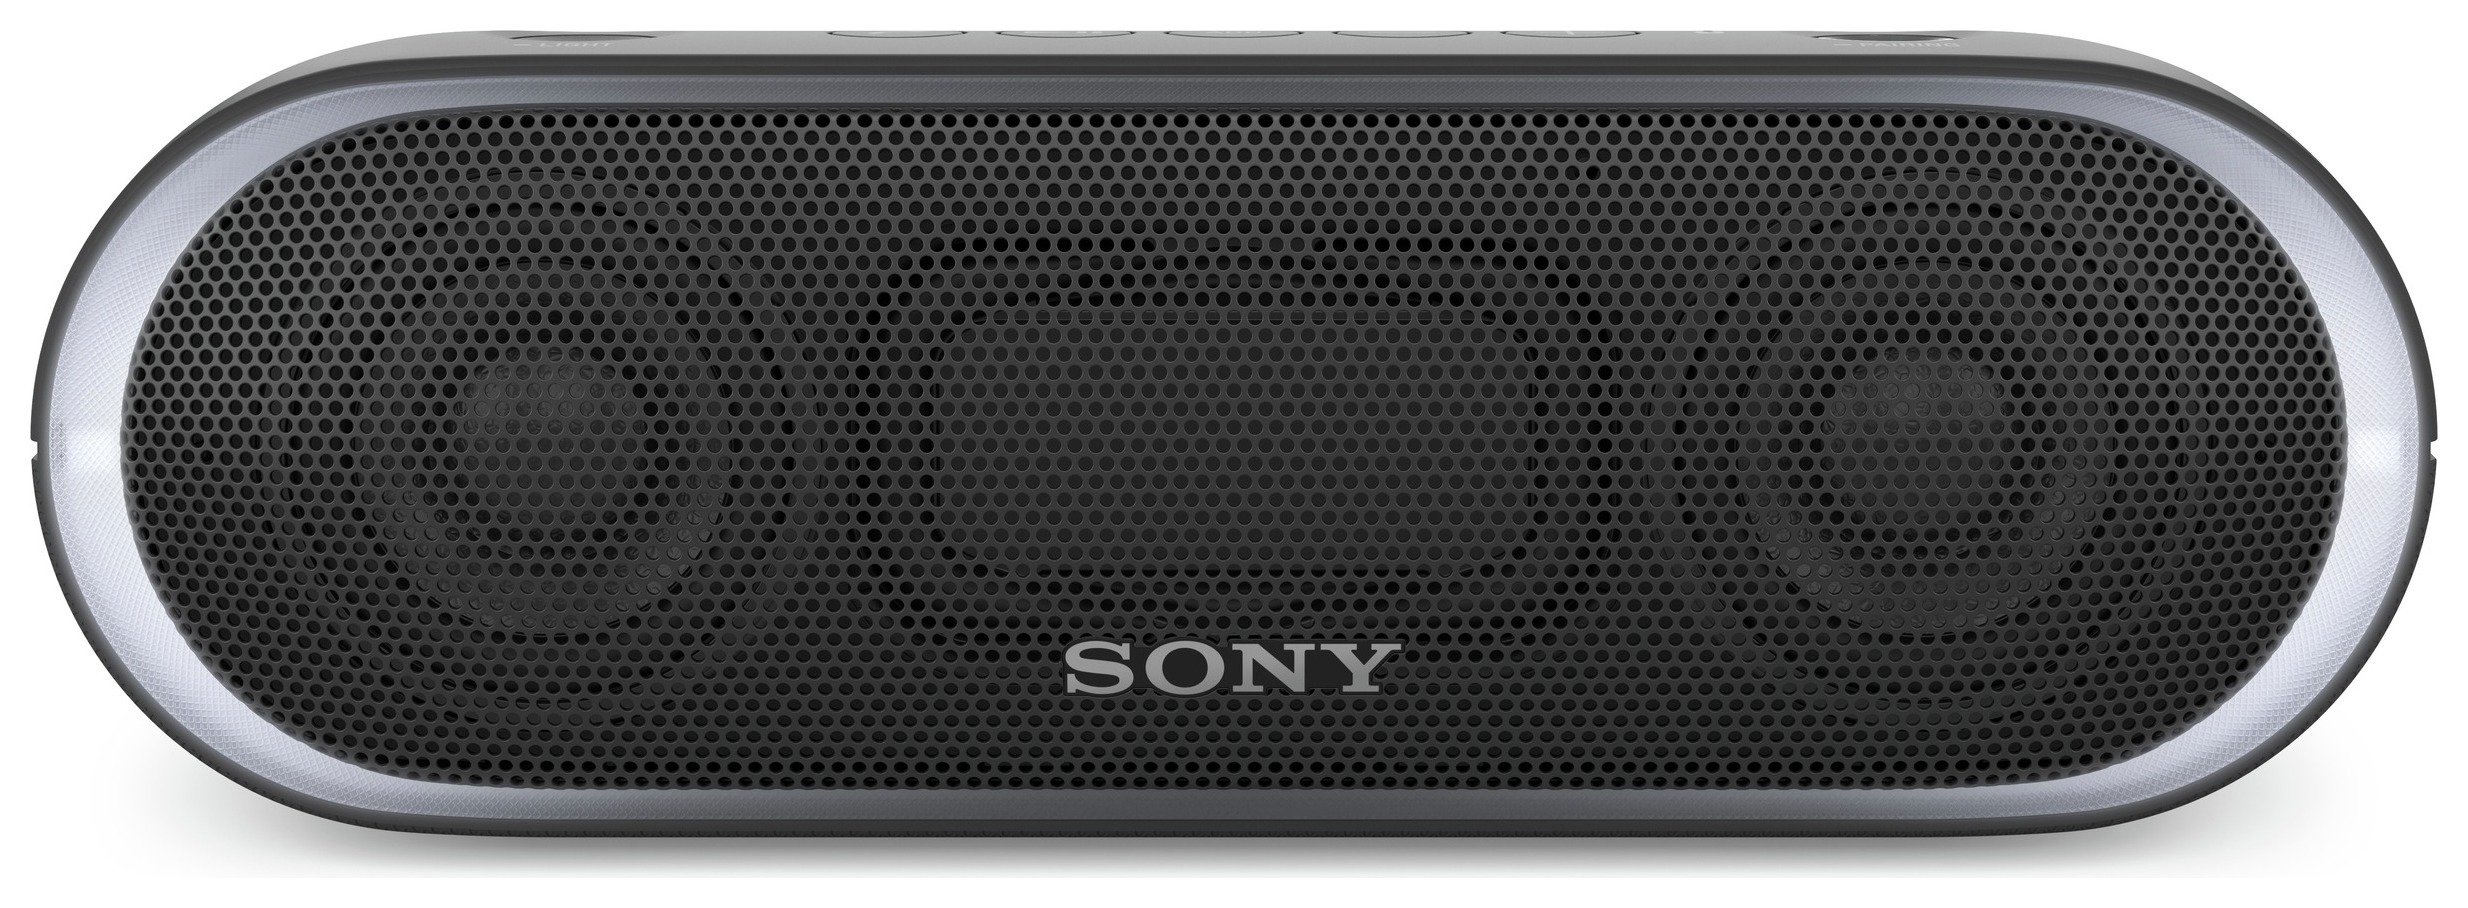 Sony SRS-XB20 Portable Wireless Speaker - Black